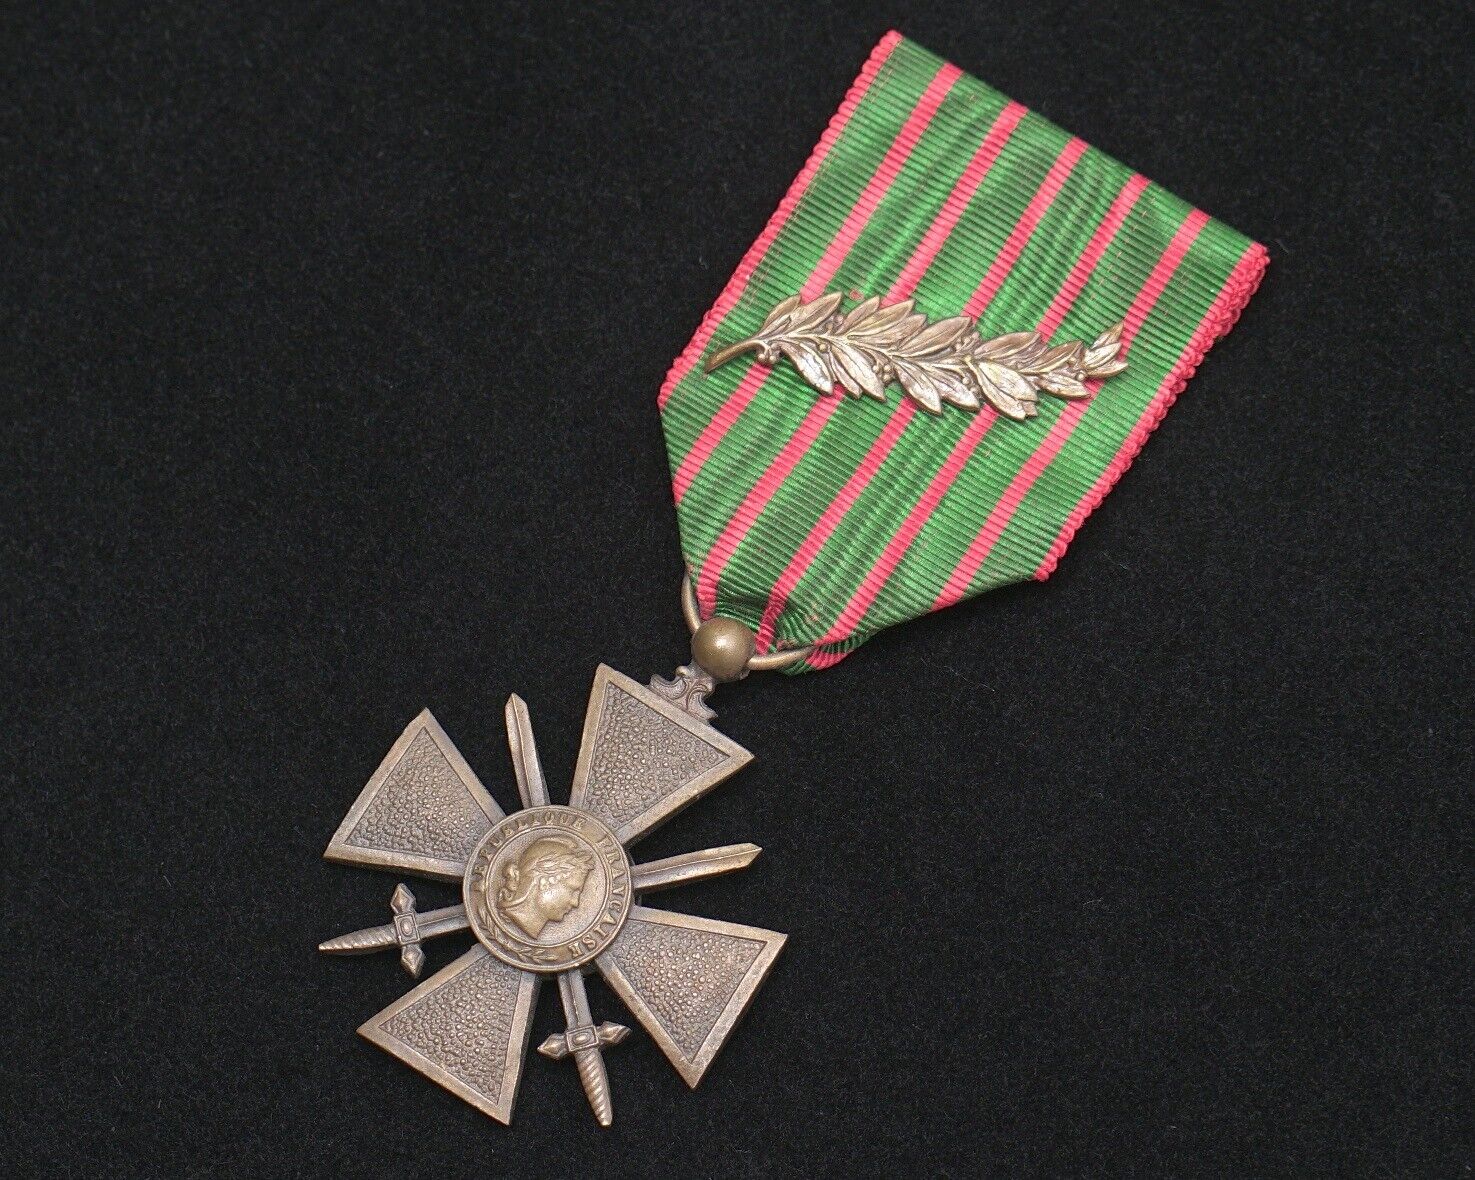 WWI 1918 French Croix de Guerre with Palm Citation on original Ribbon